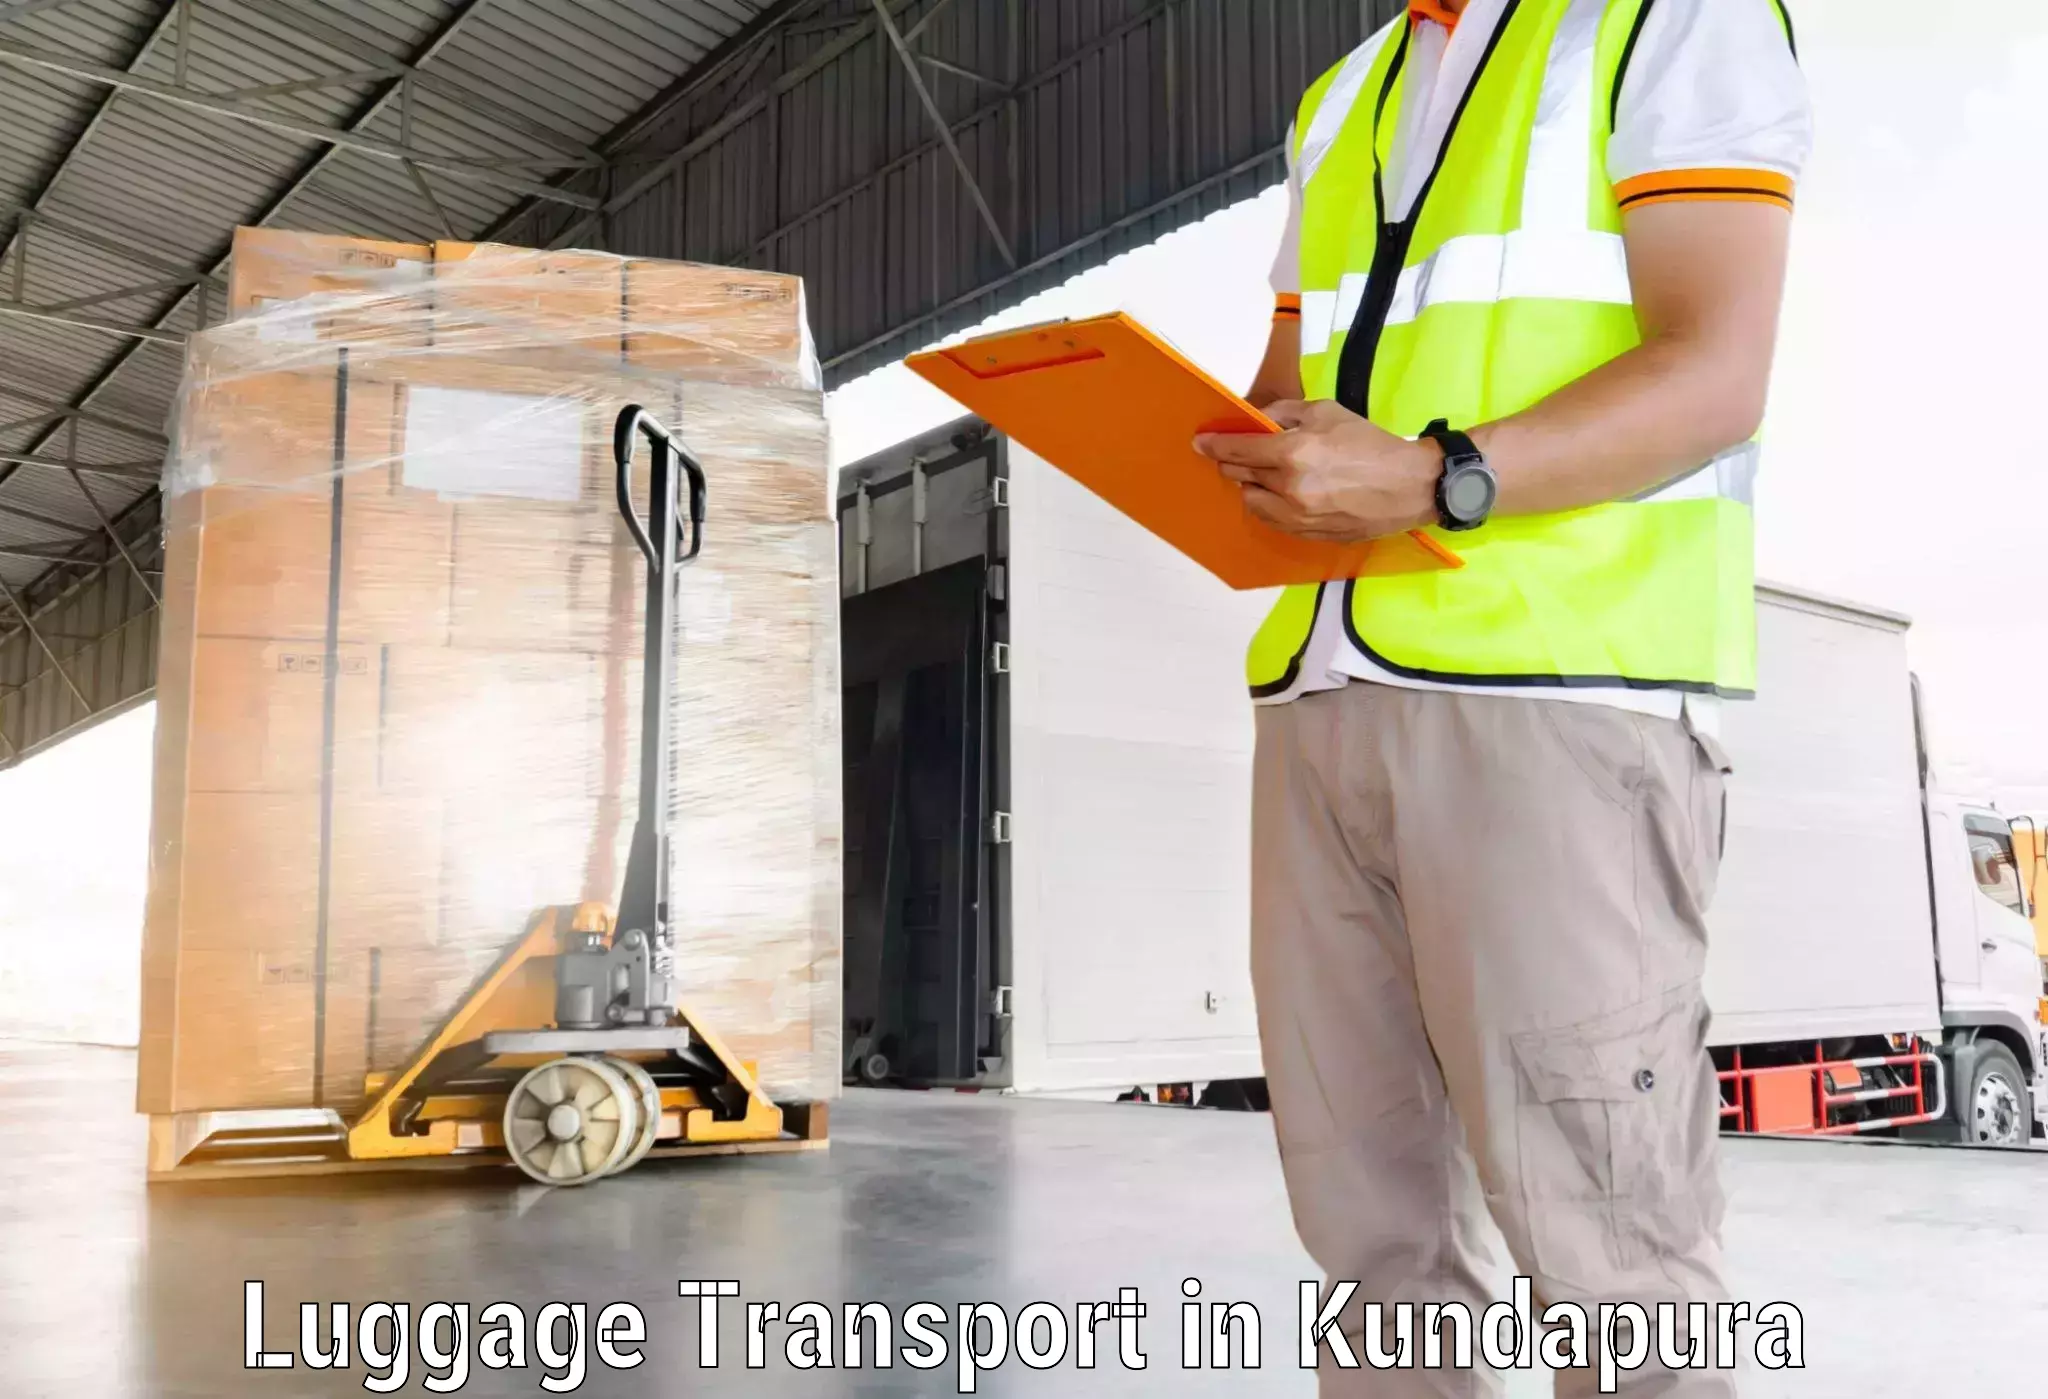 Emergency luggage shipping in Kundapura